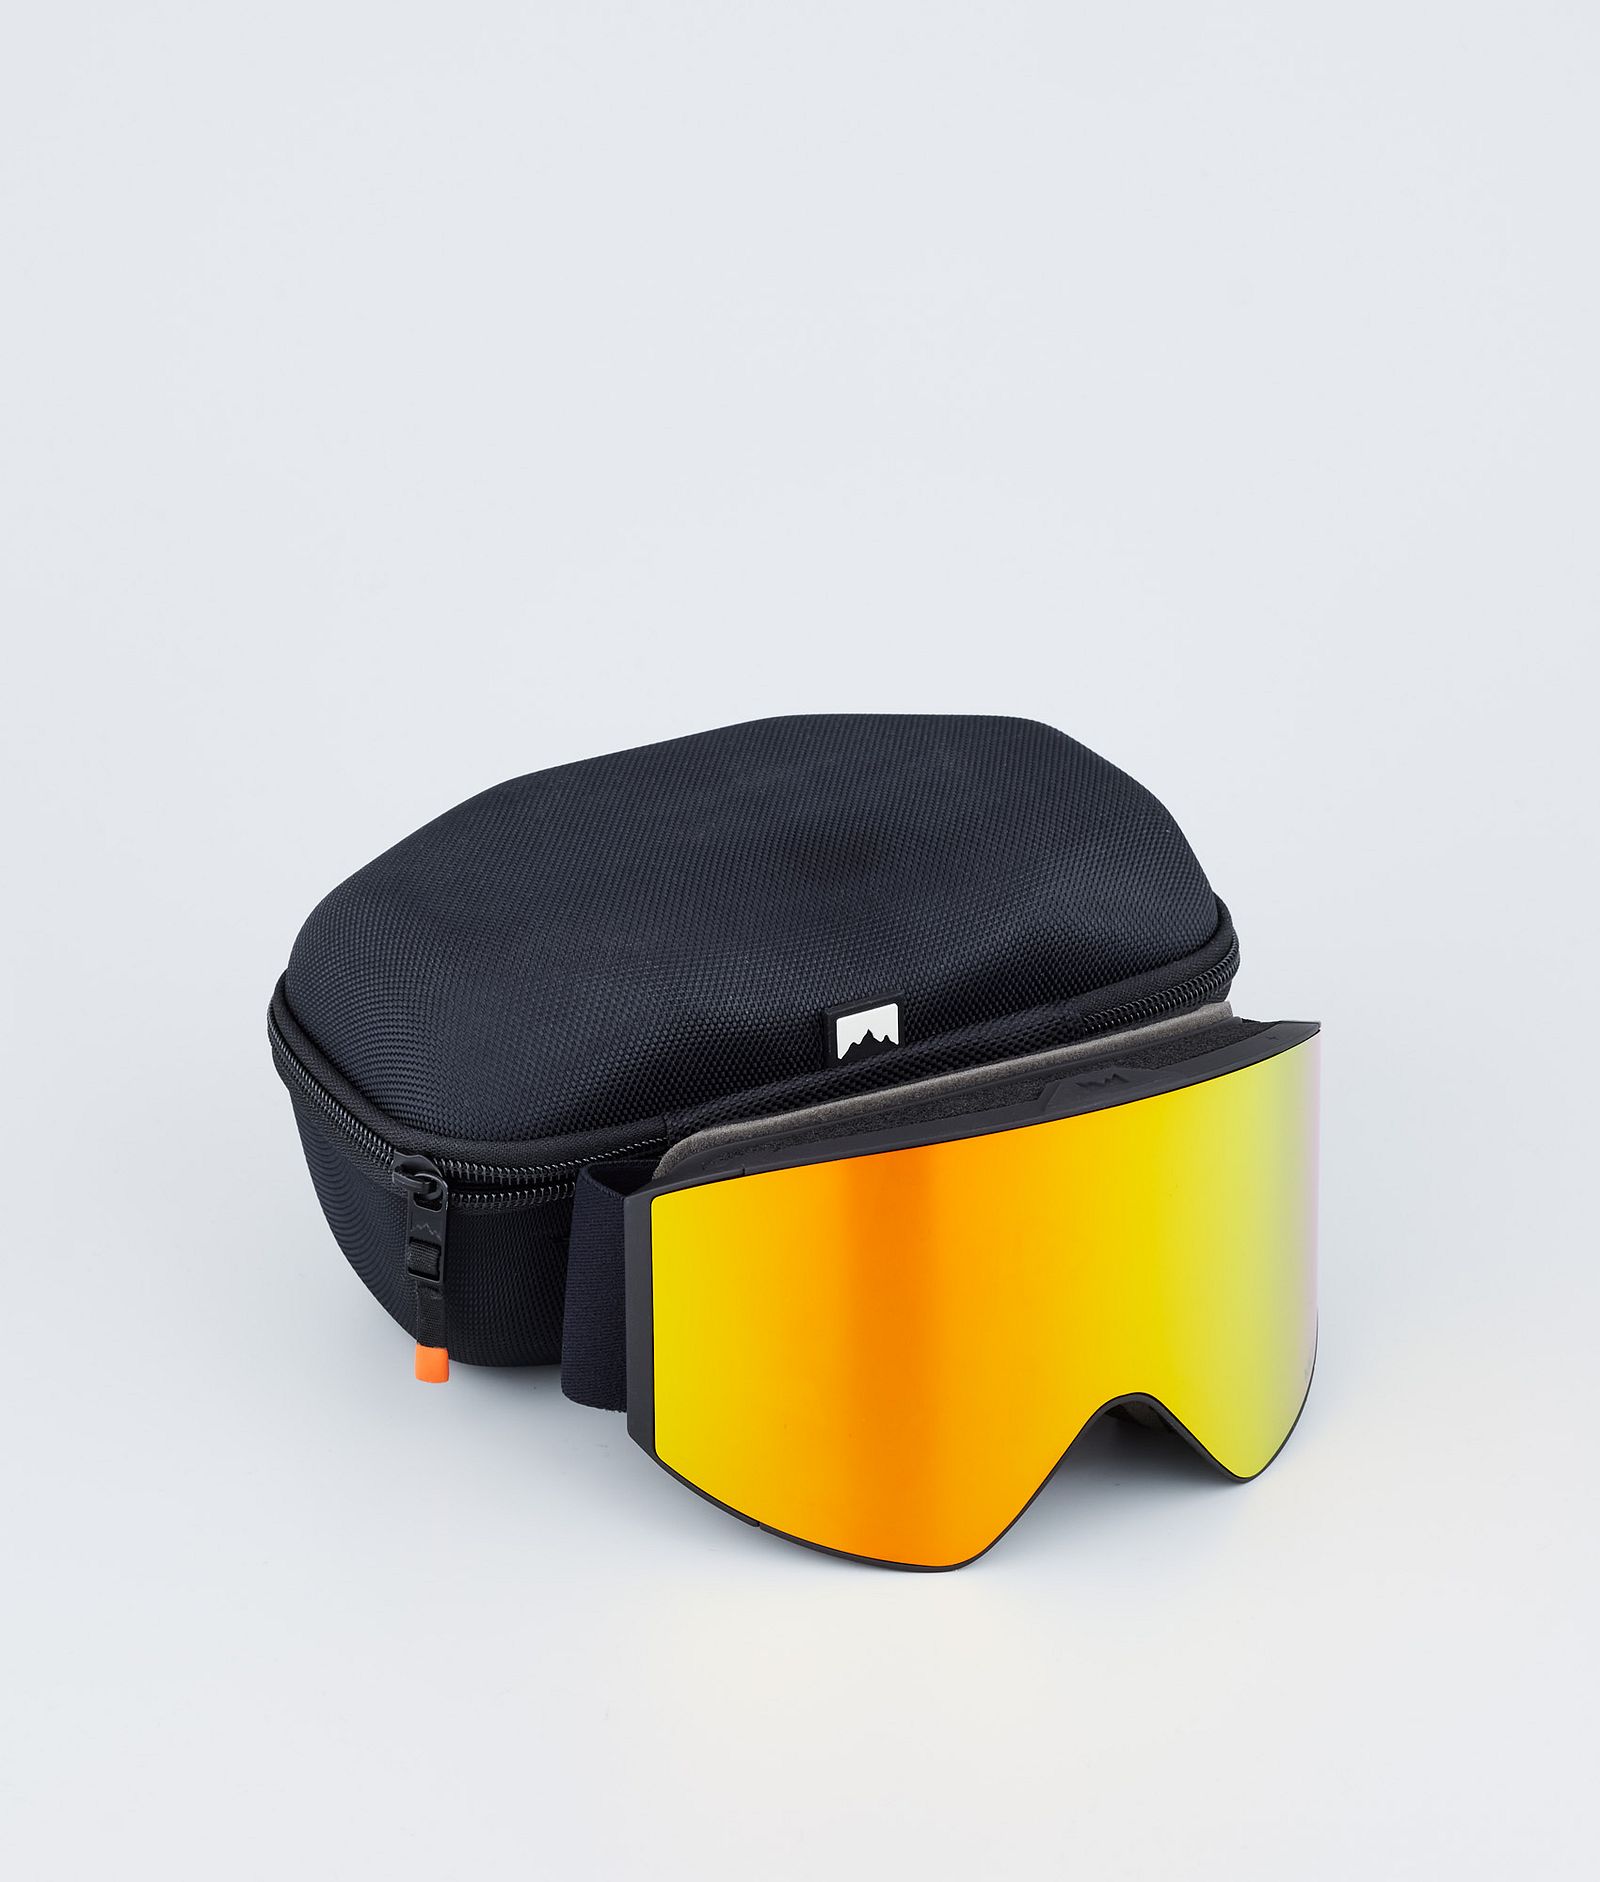 Montec Scope 2022 Gafas de esquí Black/Ruby Red Mirror